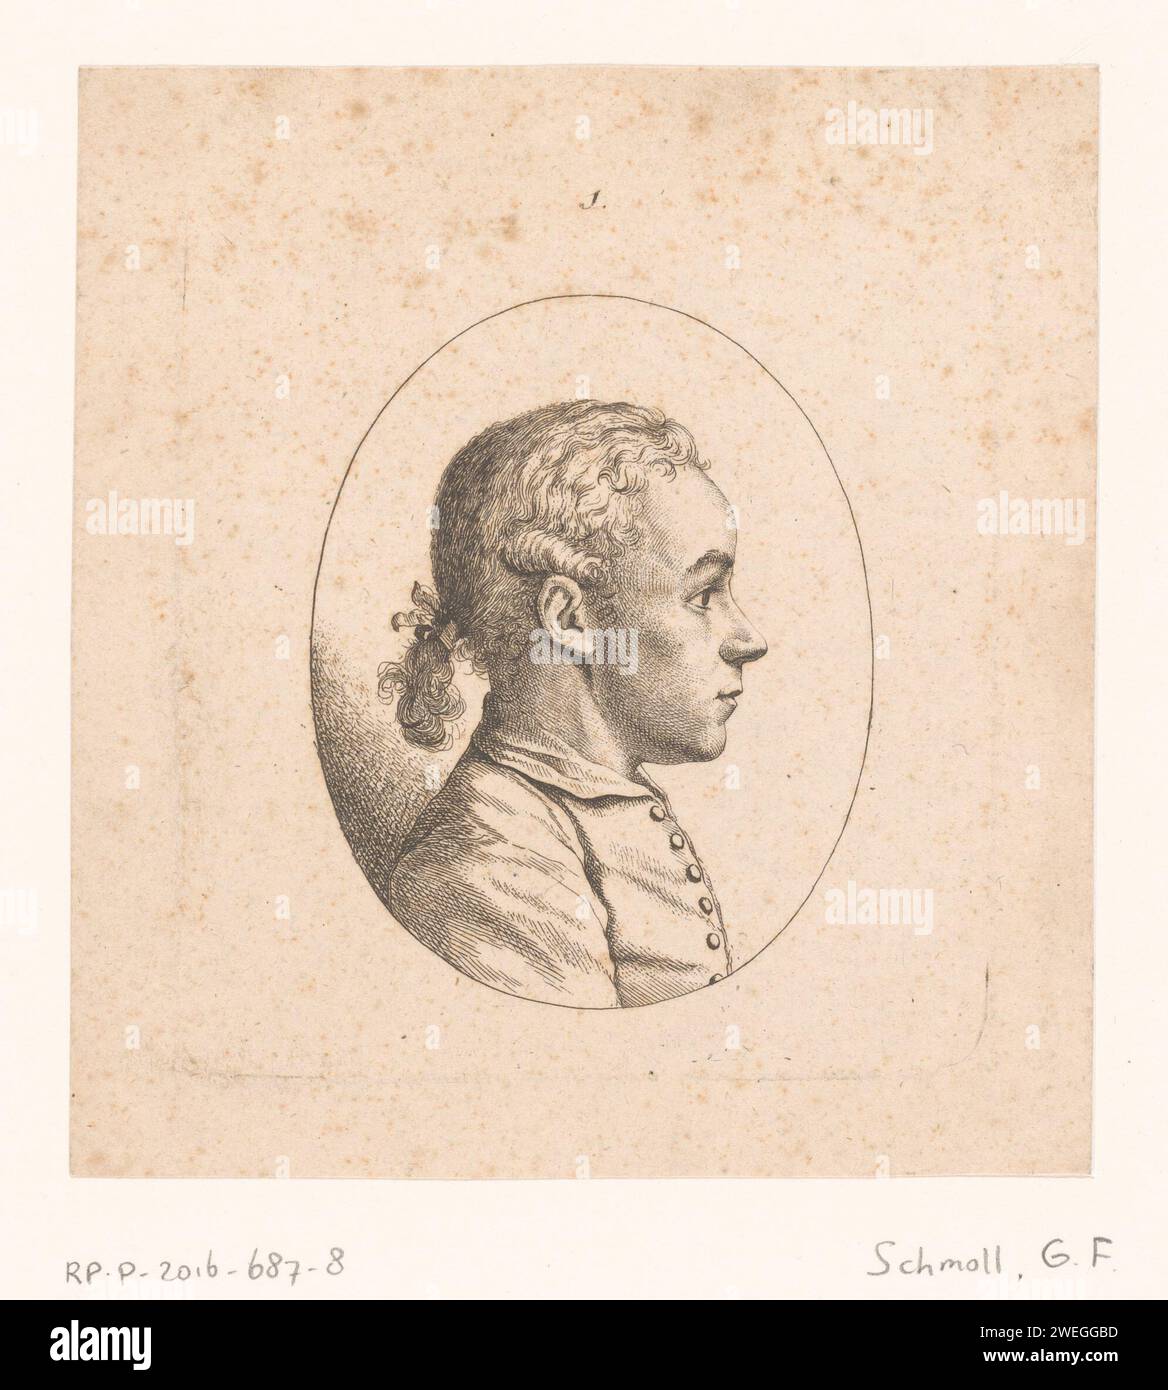 Portrait van Peter in Baumgarten, Georg Friedrich Schmoll, 1700 - 1785 gravure sur papier de personnages historiques Banque D'Images